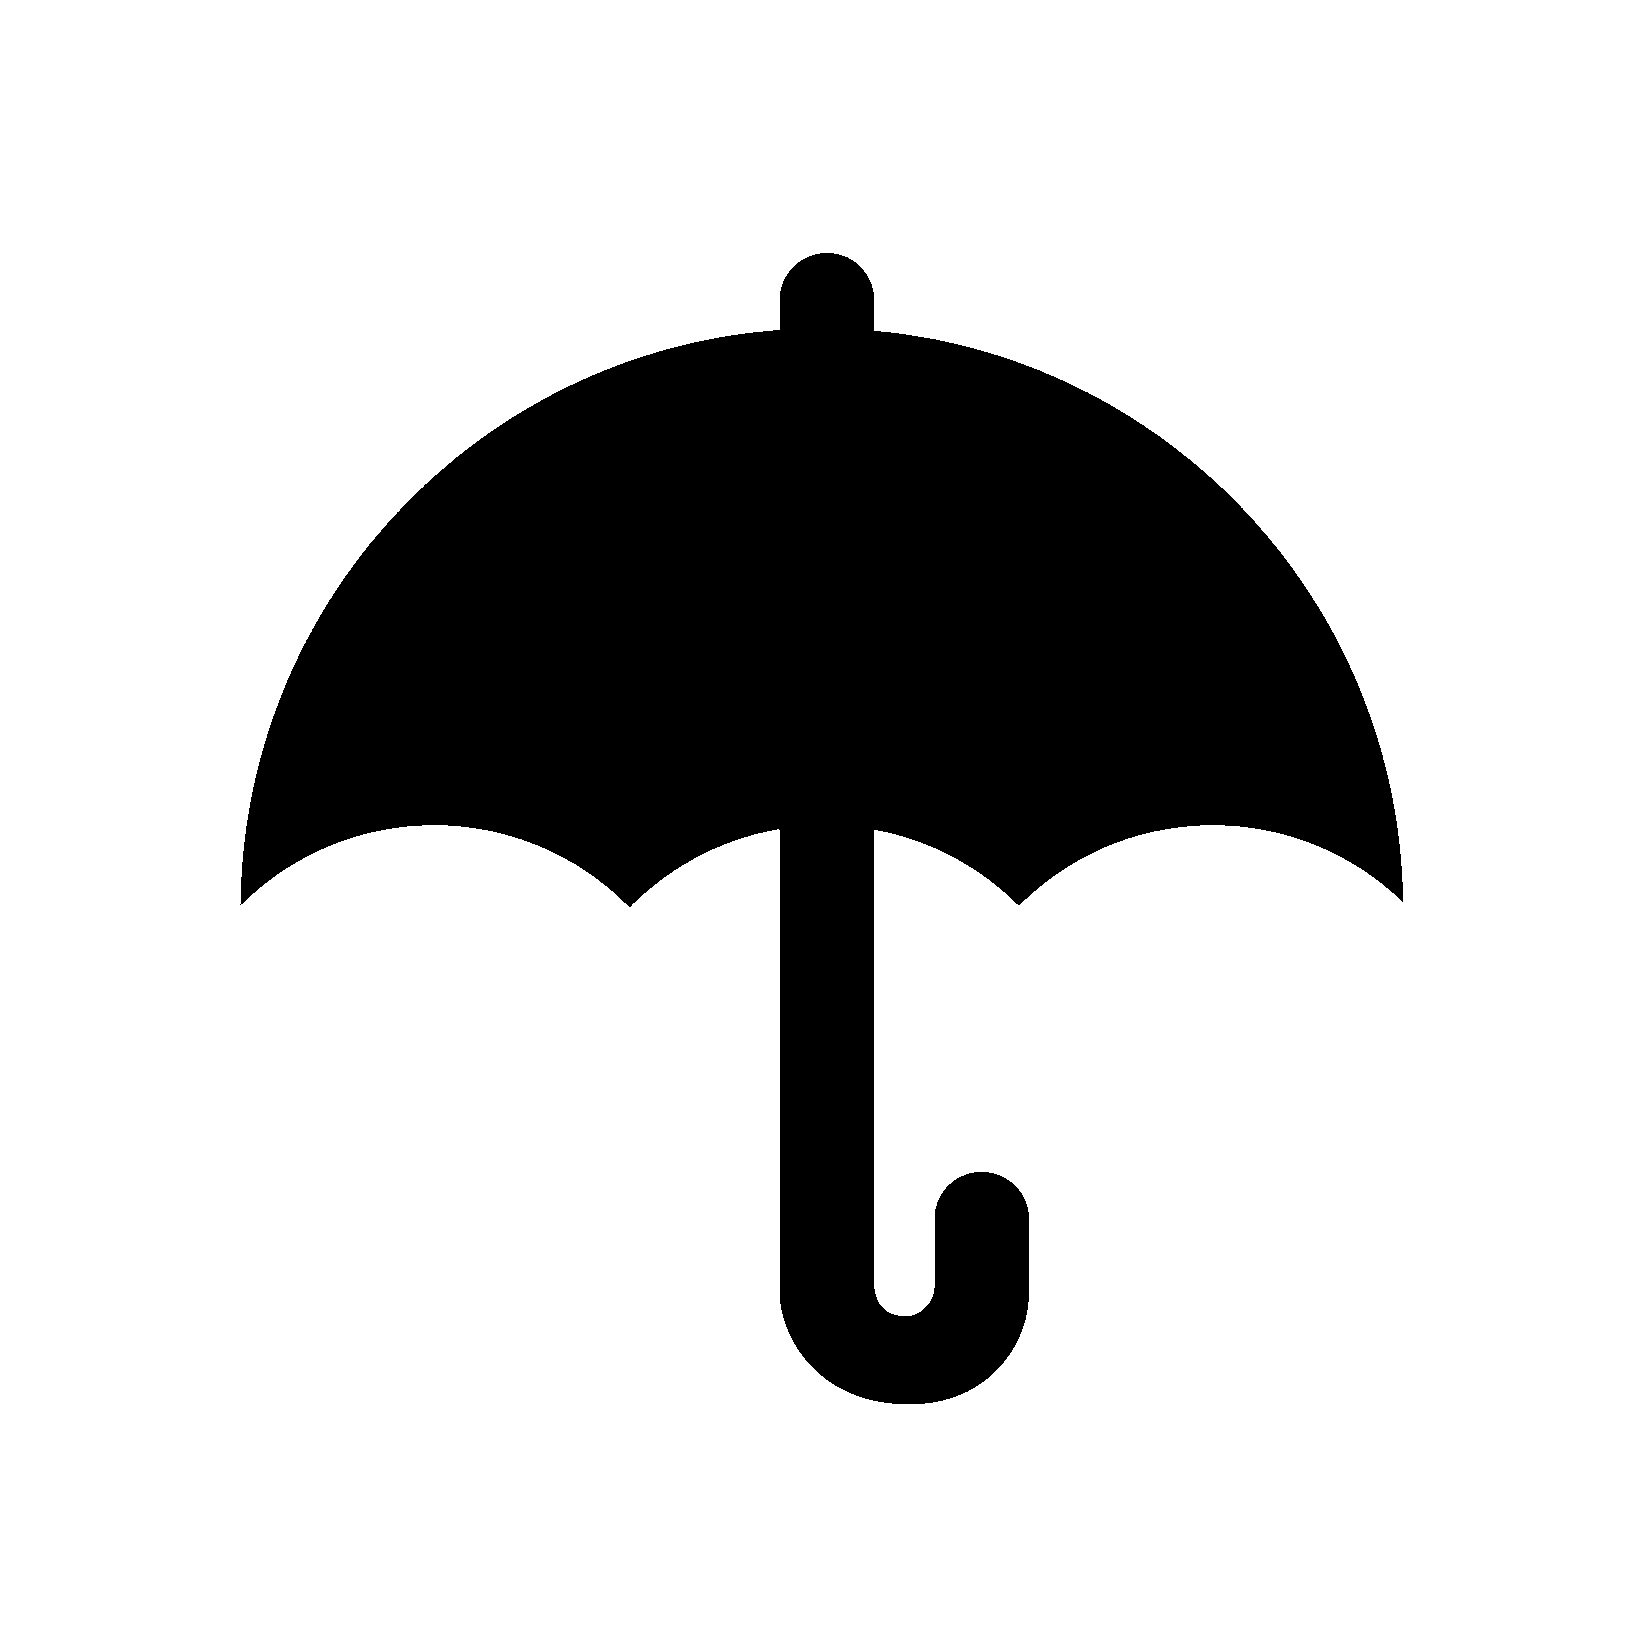 File:Umbrella parapluie.PNG